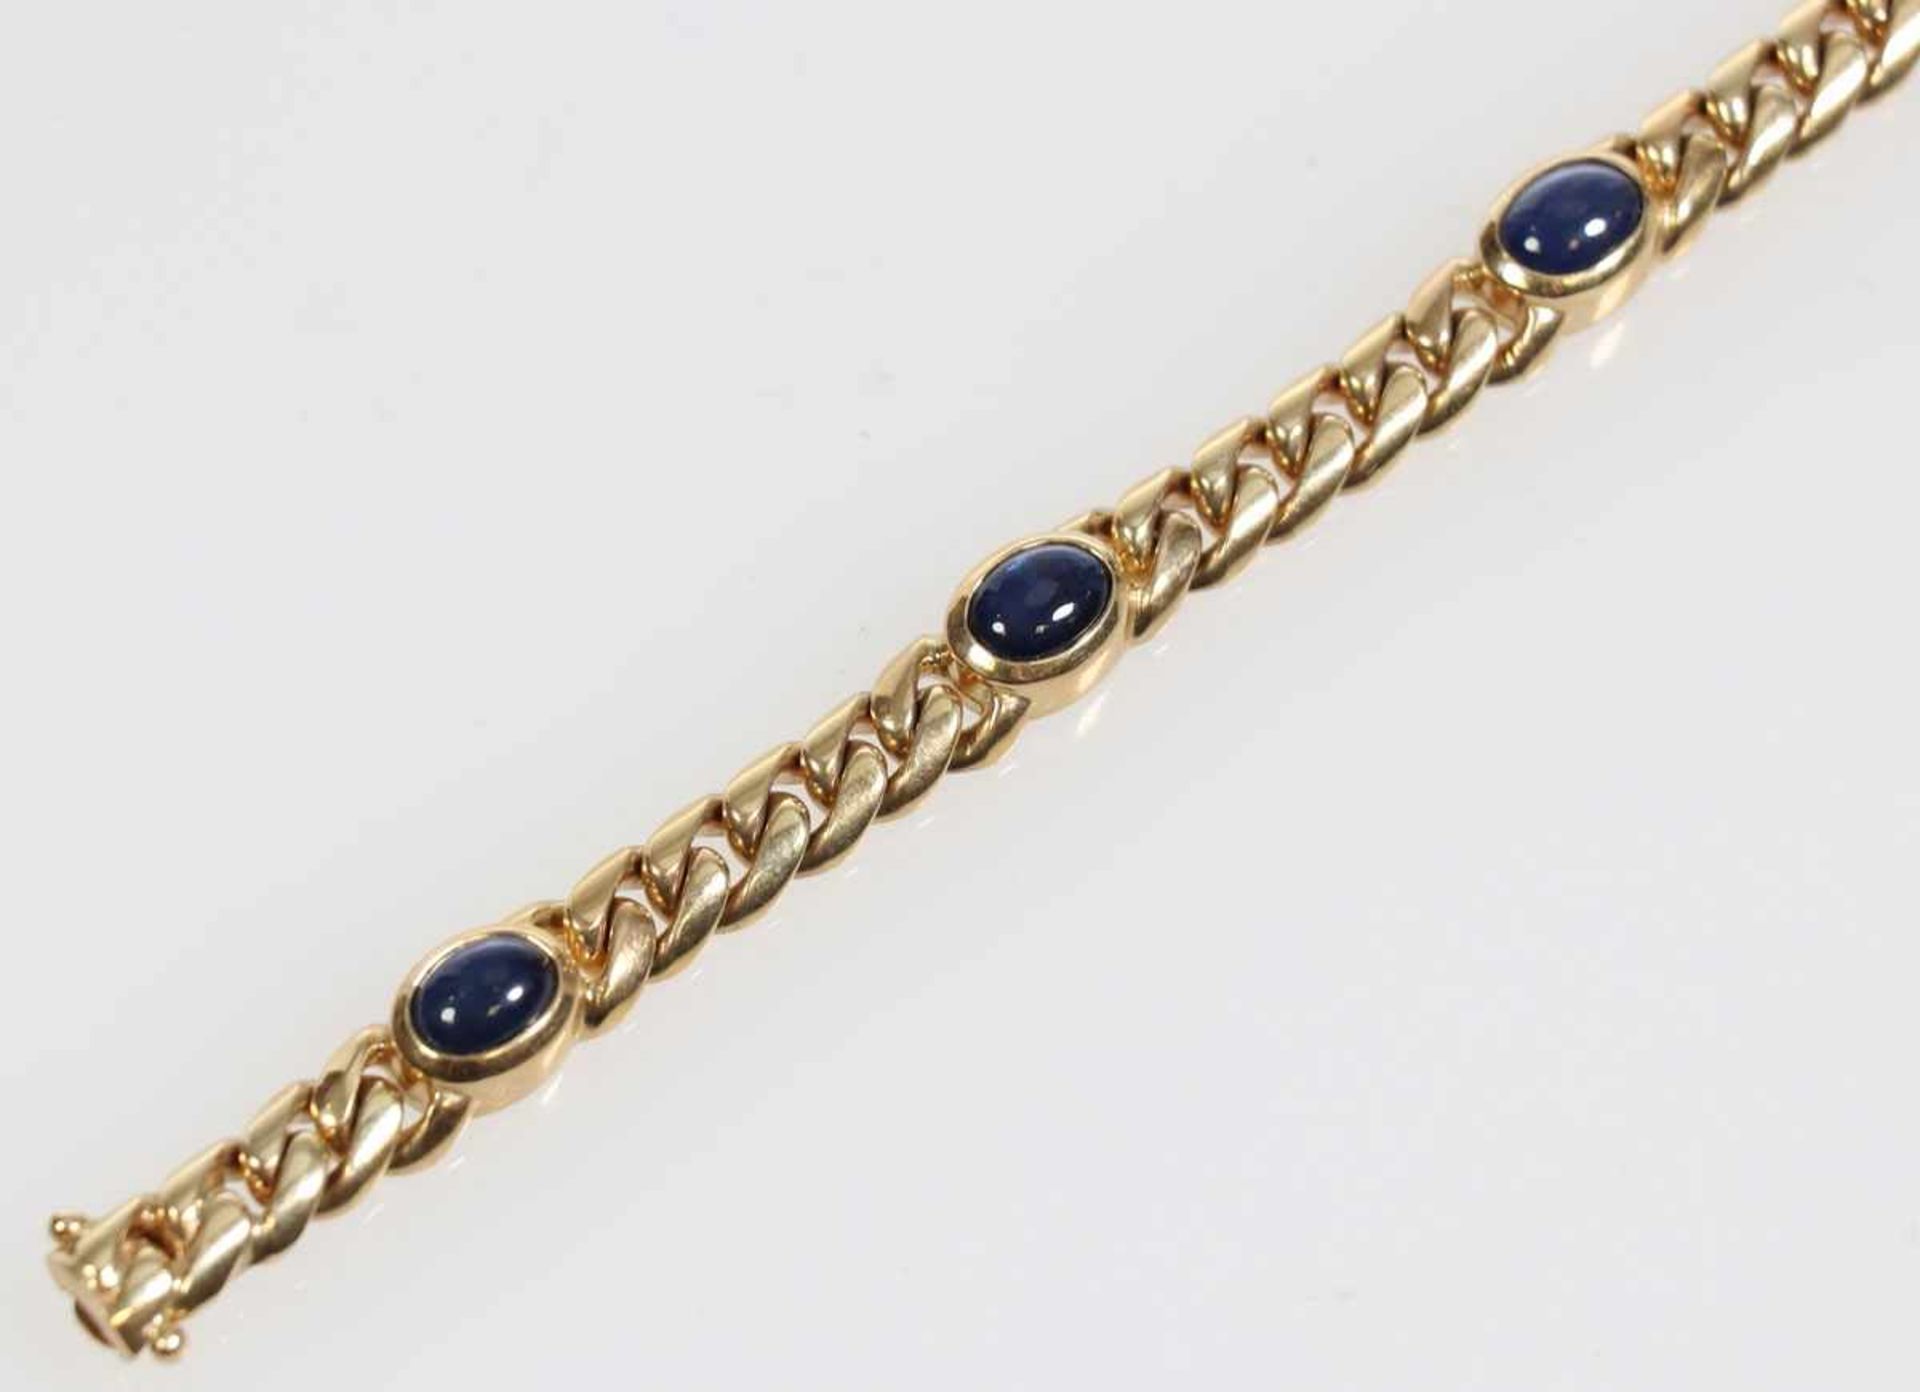 Klassisches Cabochon-Armband mit Saphiren585/- Gelbgold, gestemp. Gewicht: 36,1 g. 5 Saphire zus. - Bild 2 aus 2